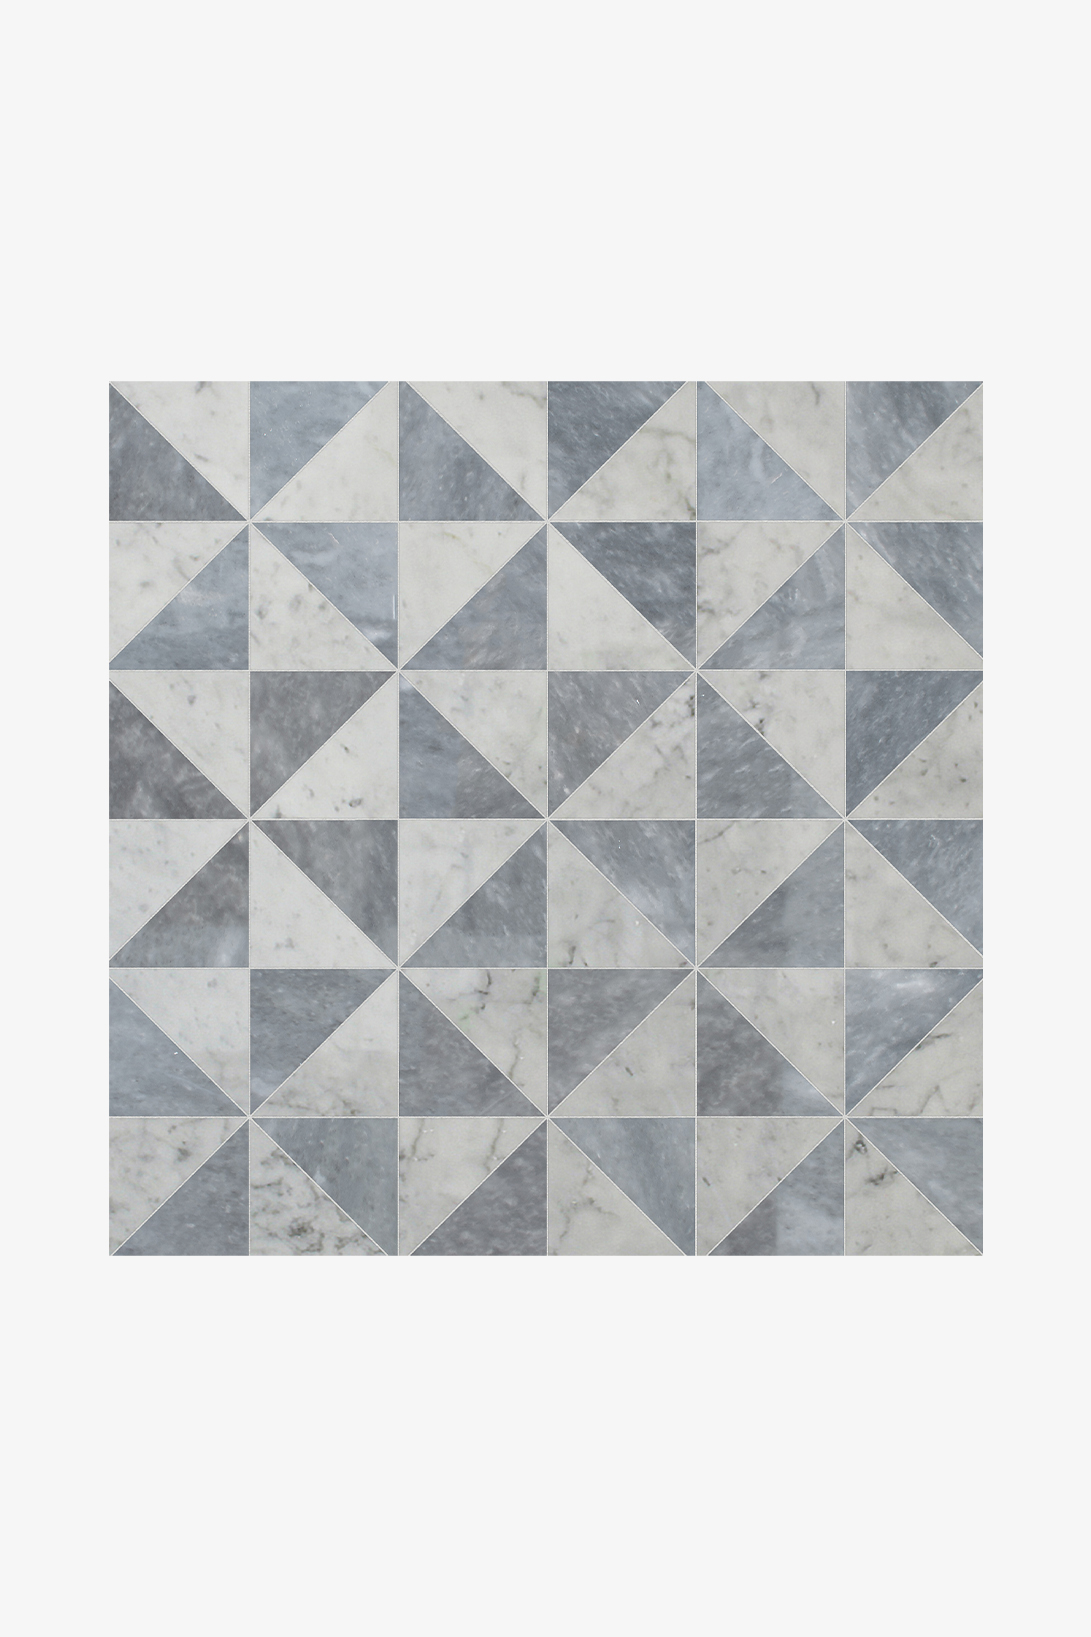 Parramore Quilt Block Mosaic